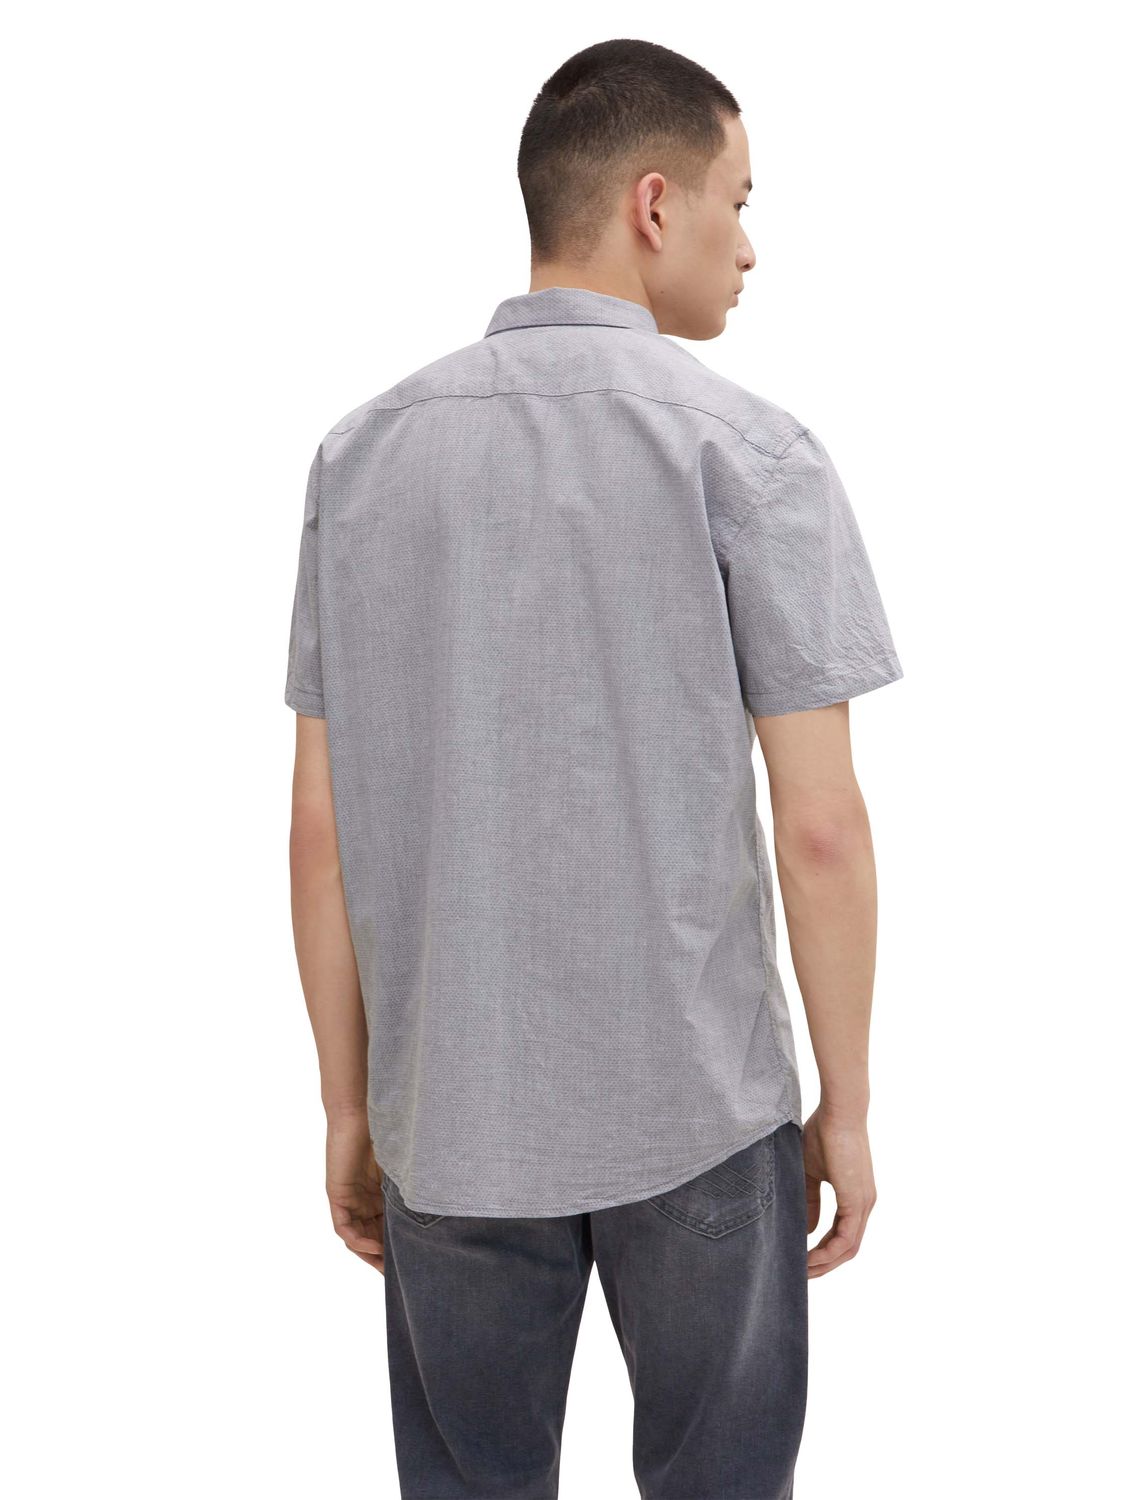 Tom Tailor Denim Herren Hemd STRUCTURED günstig online kaufen